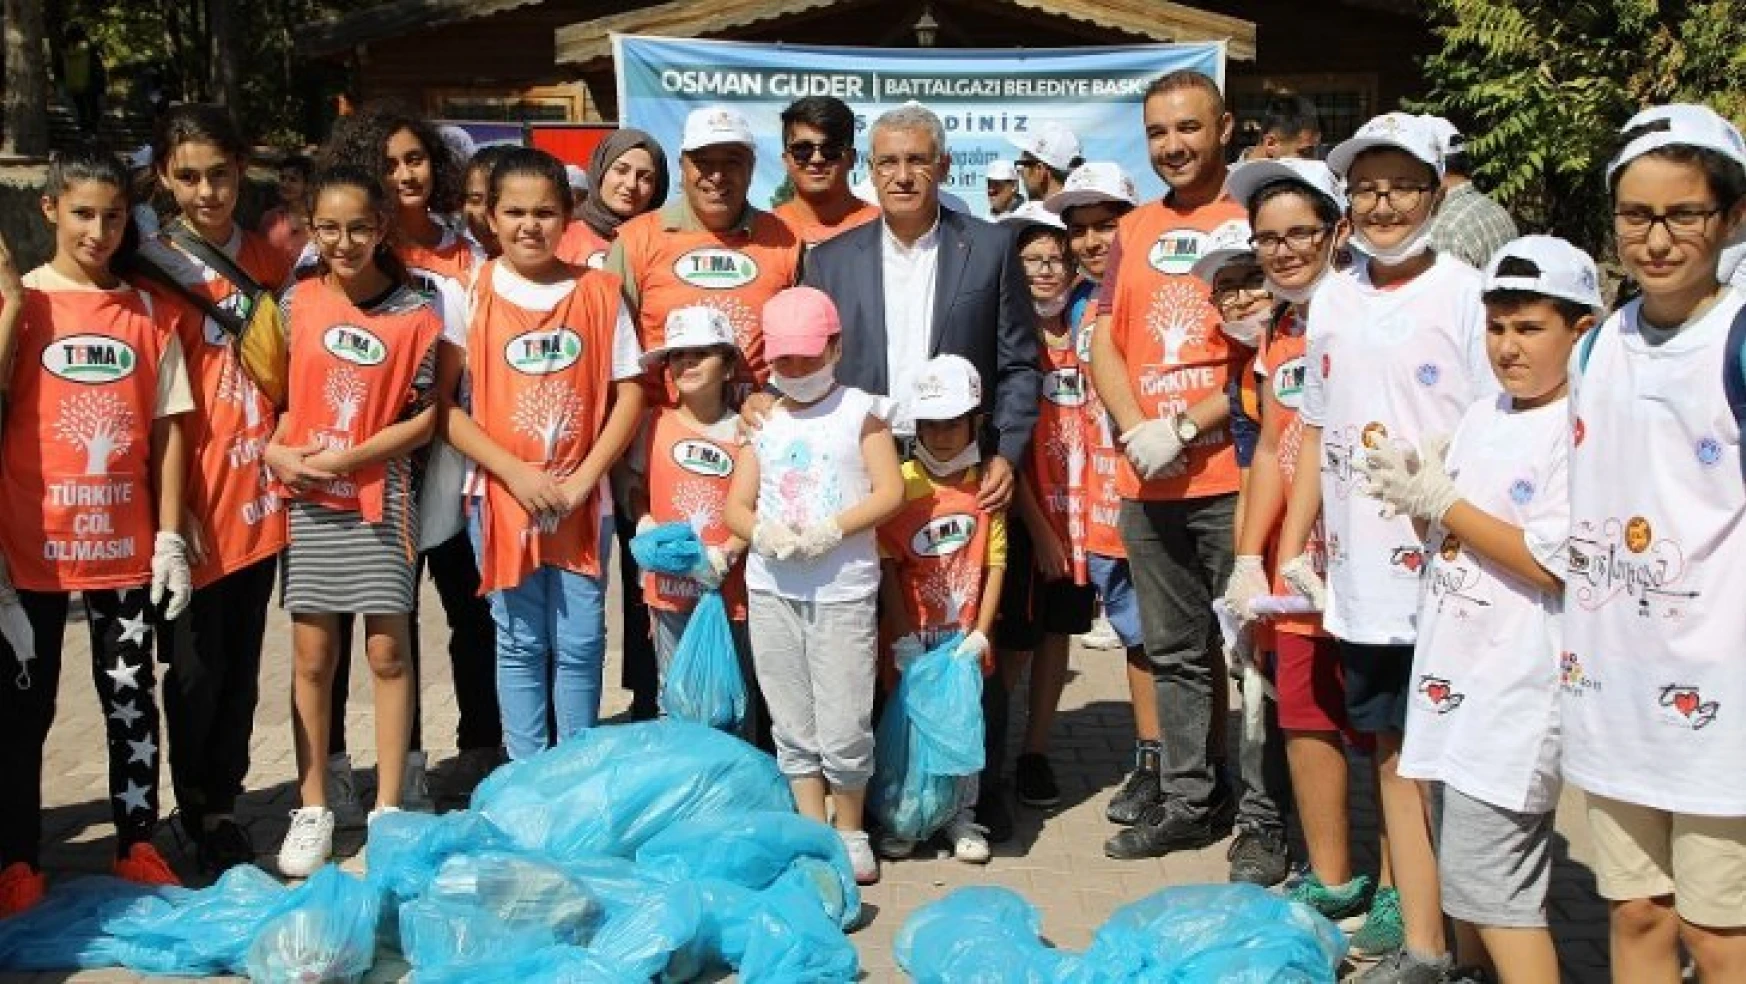 Başkan Güder: 'Temiz toplum ve temiz çevre için el ele verelim'